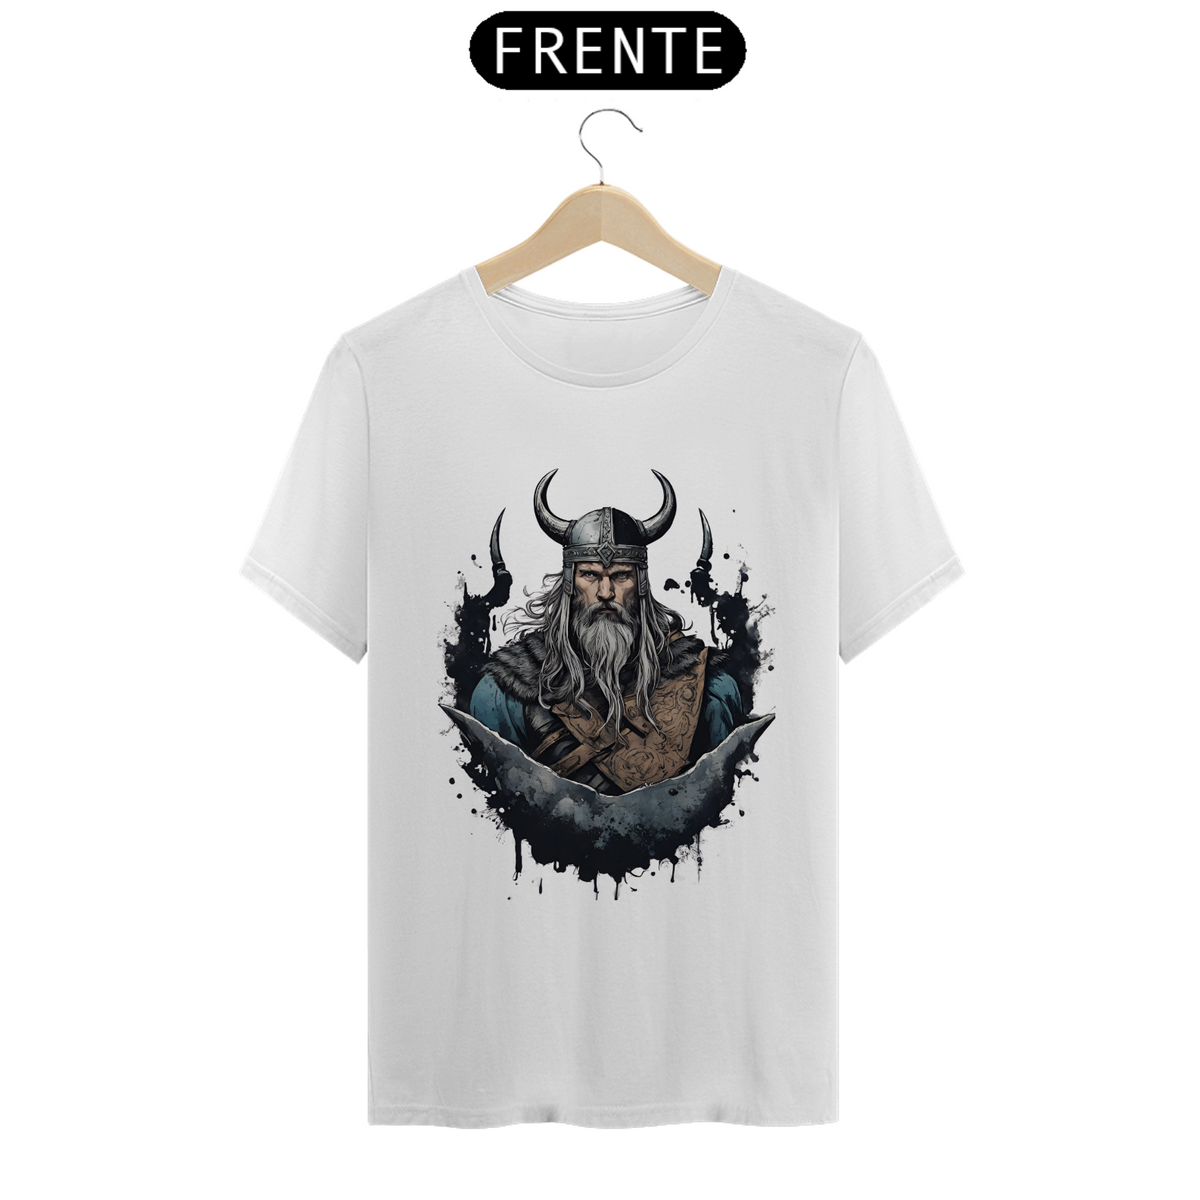 Nome do produto: Viking warrior - T - Shirt - Nordicos